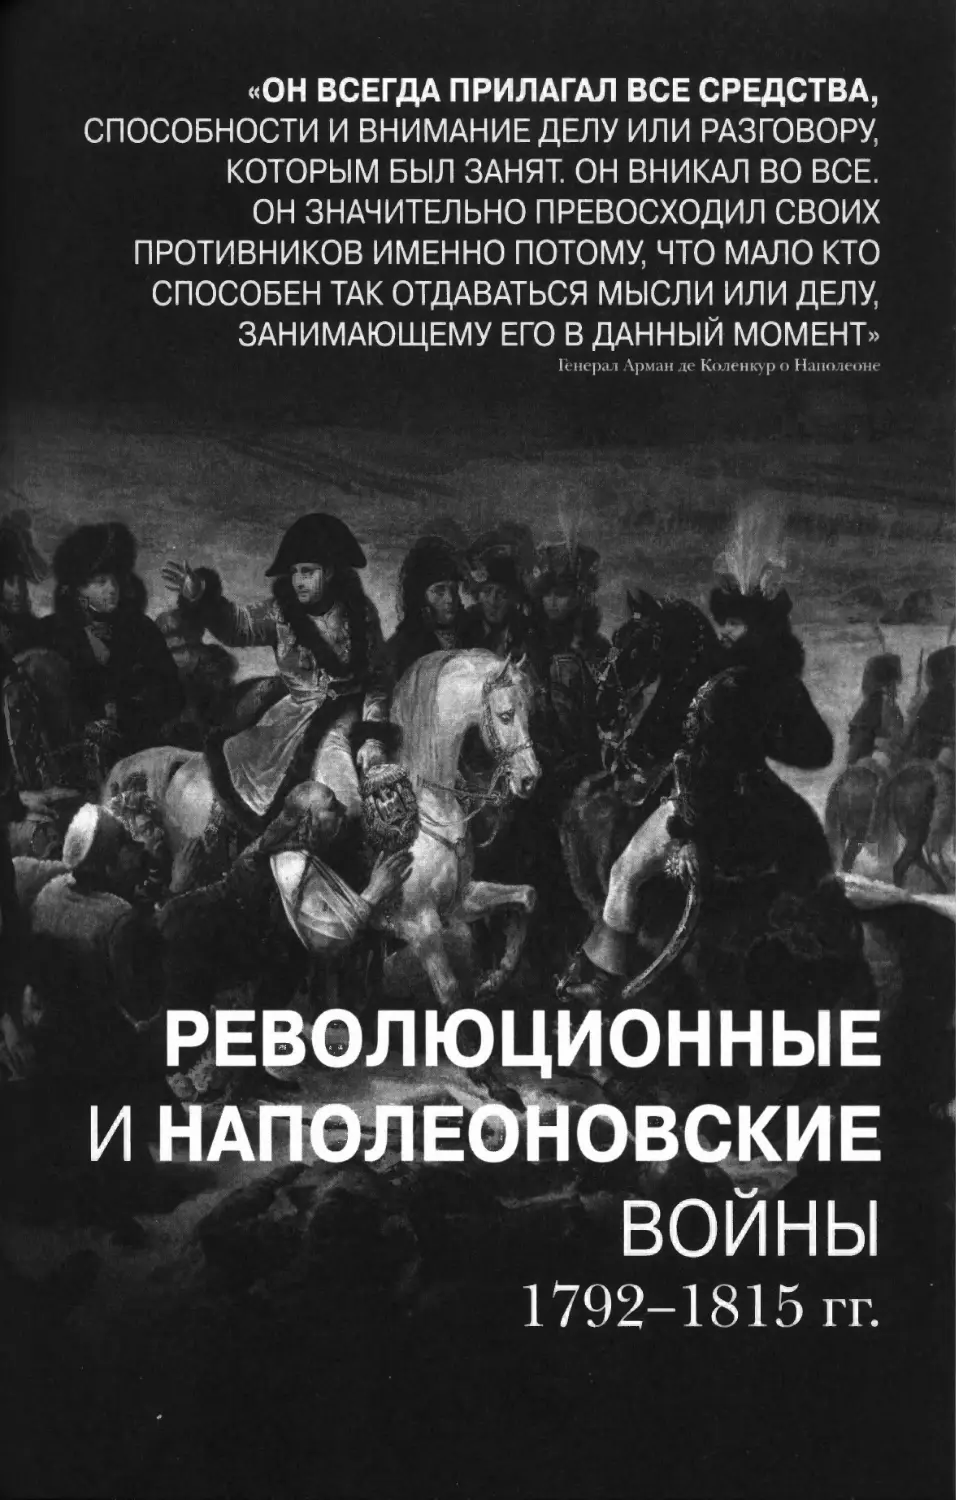 Революционные и наполеоновские войны 1792-1815 годы